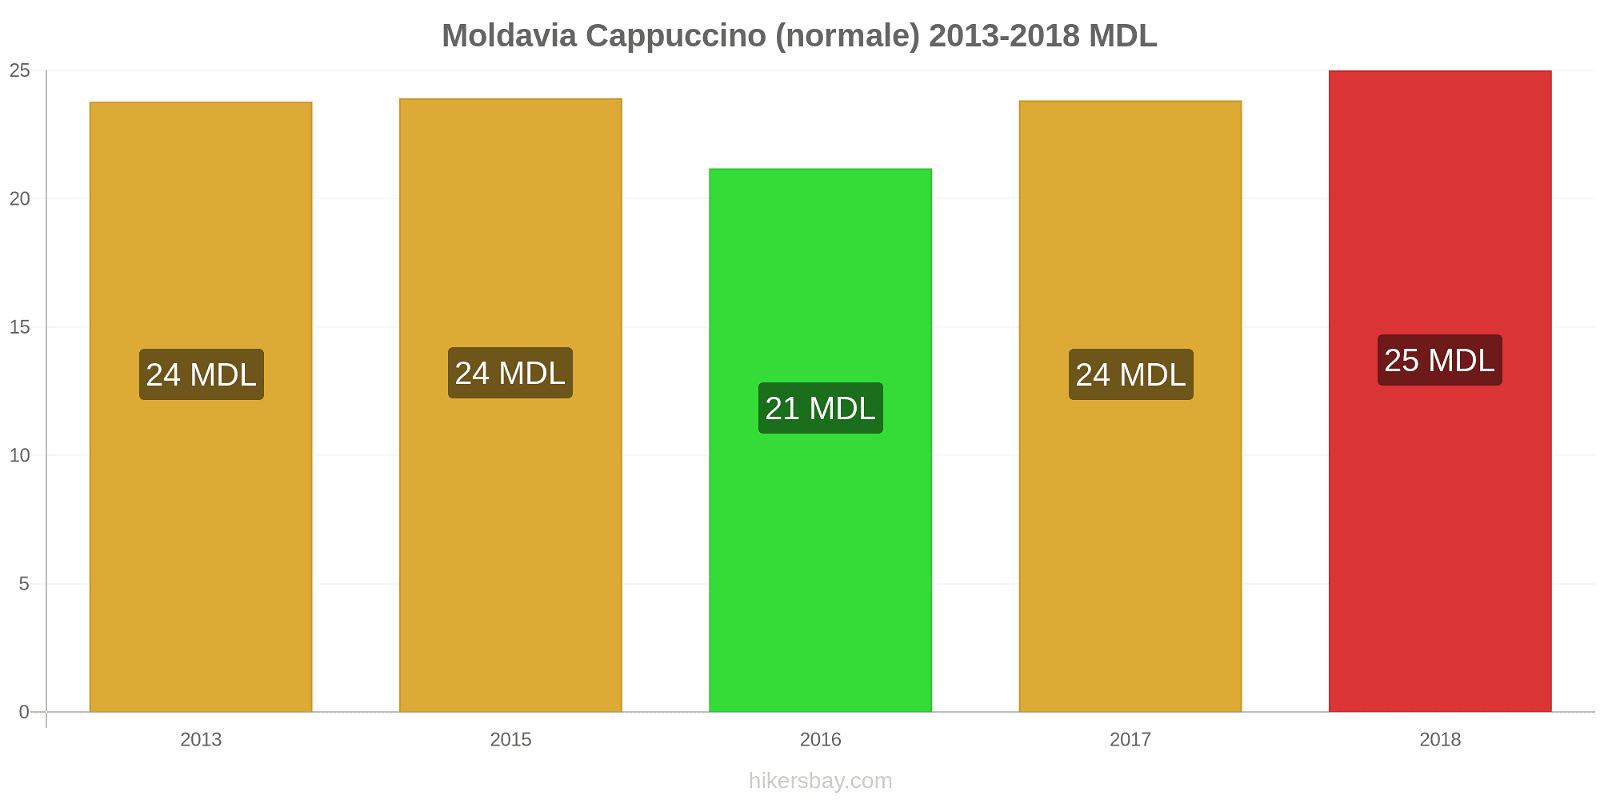 Moldavia cambi di prezzo Cappuccino hikersbay.com